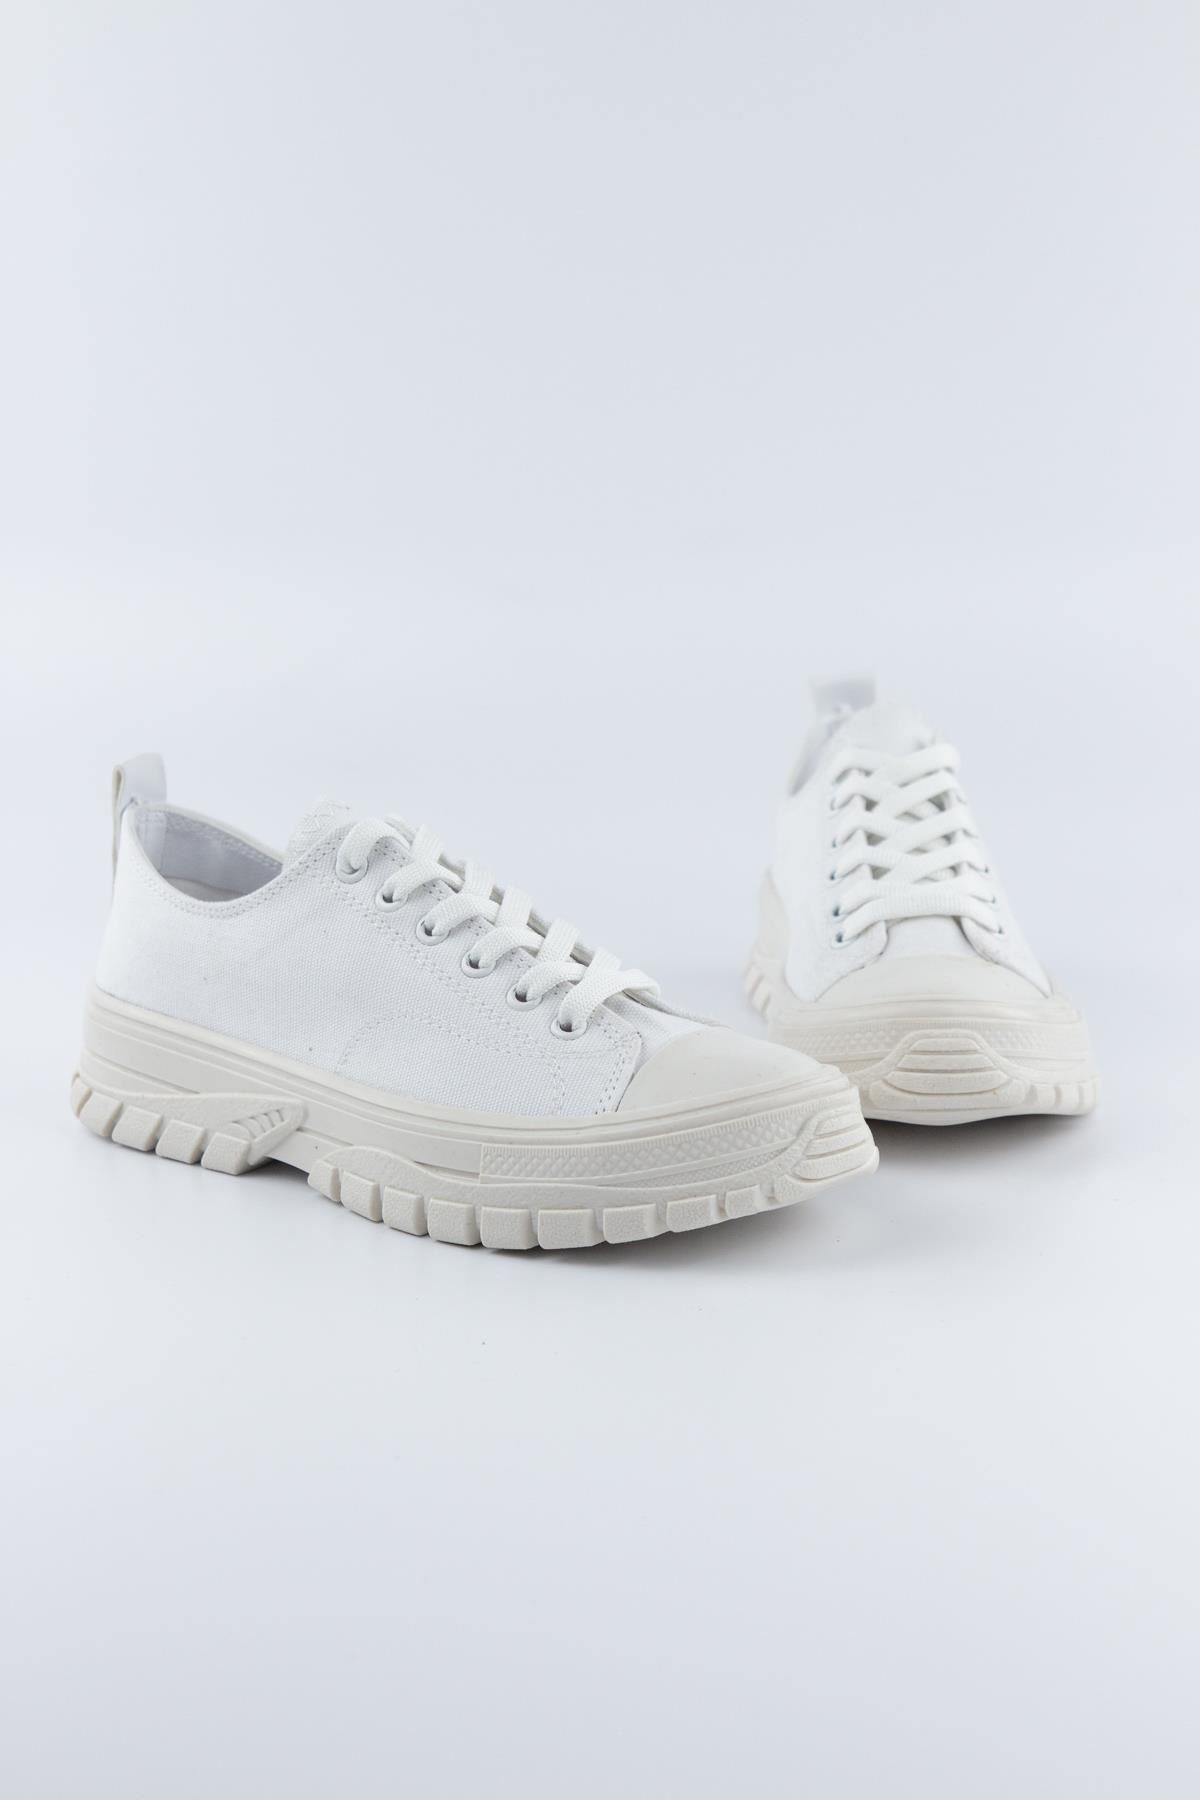 Asante Kadın Sneaker Spor Ayakkabı Beyaz Keten